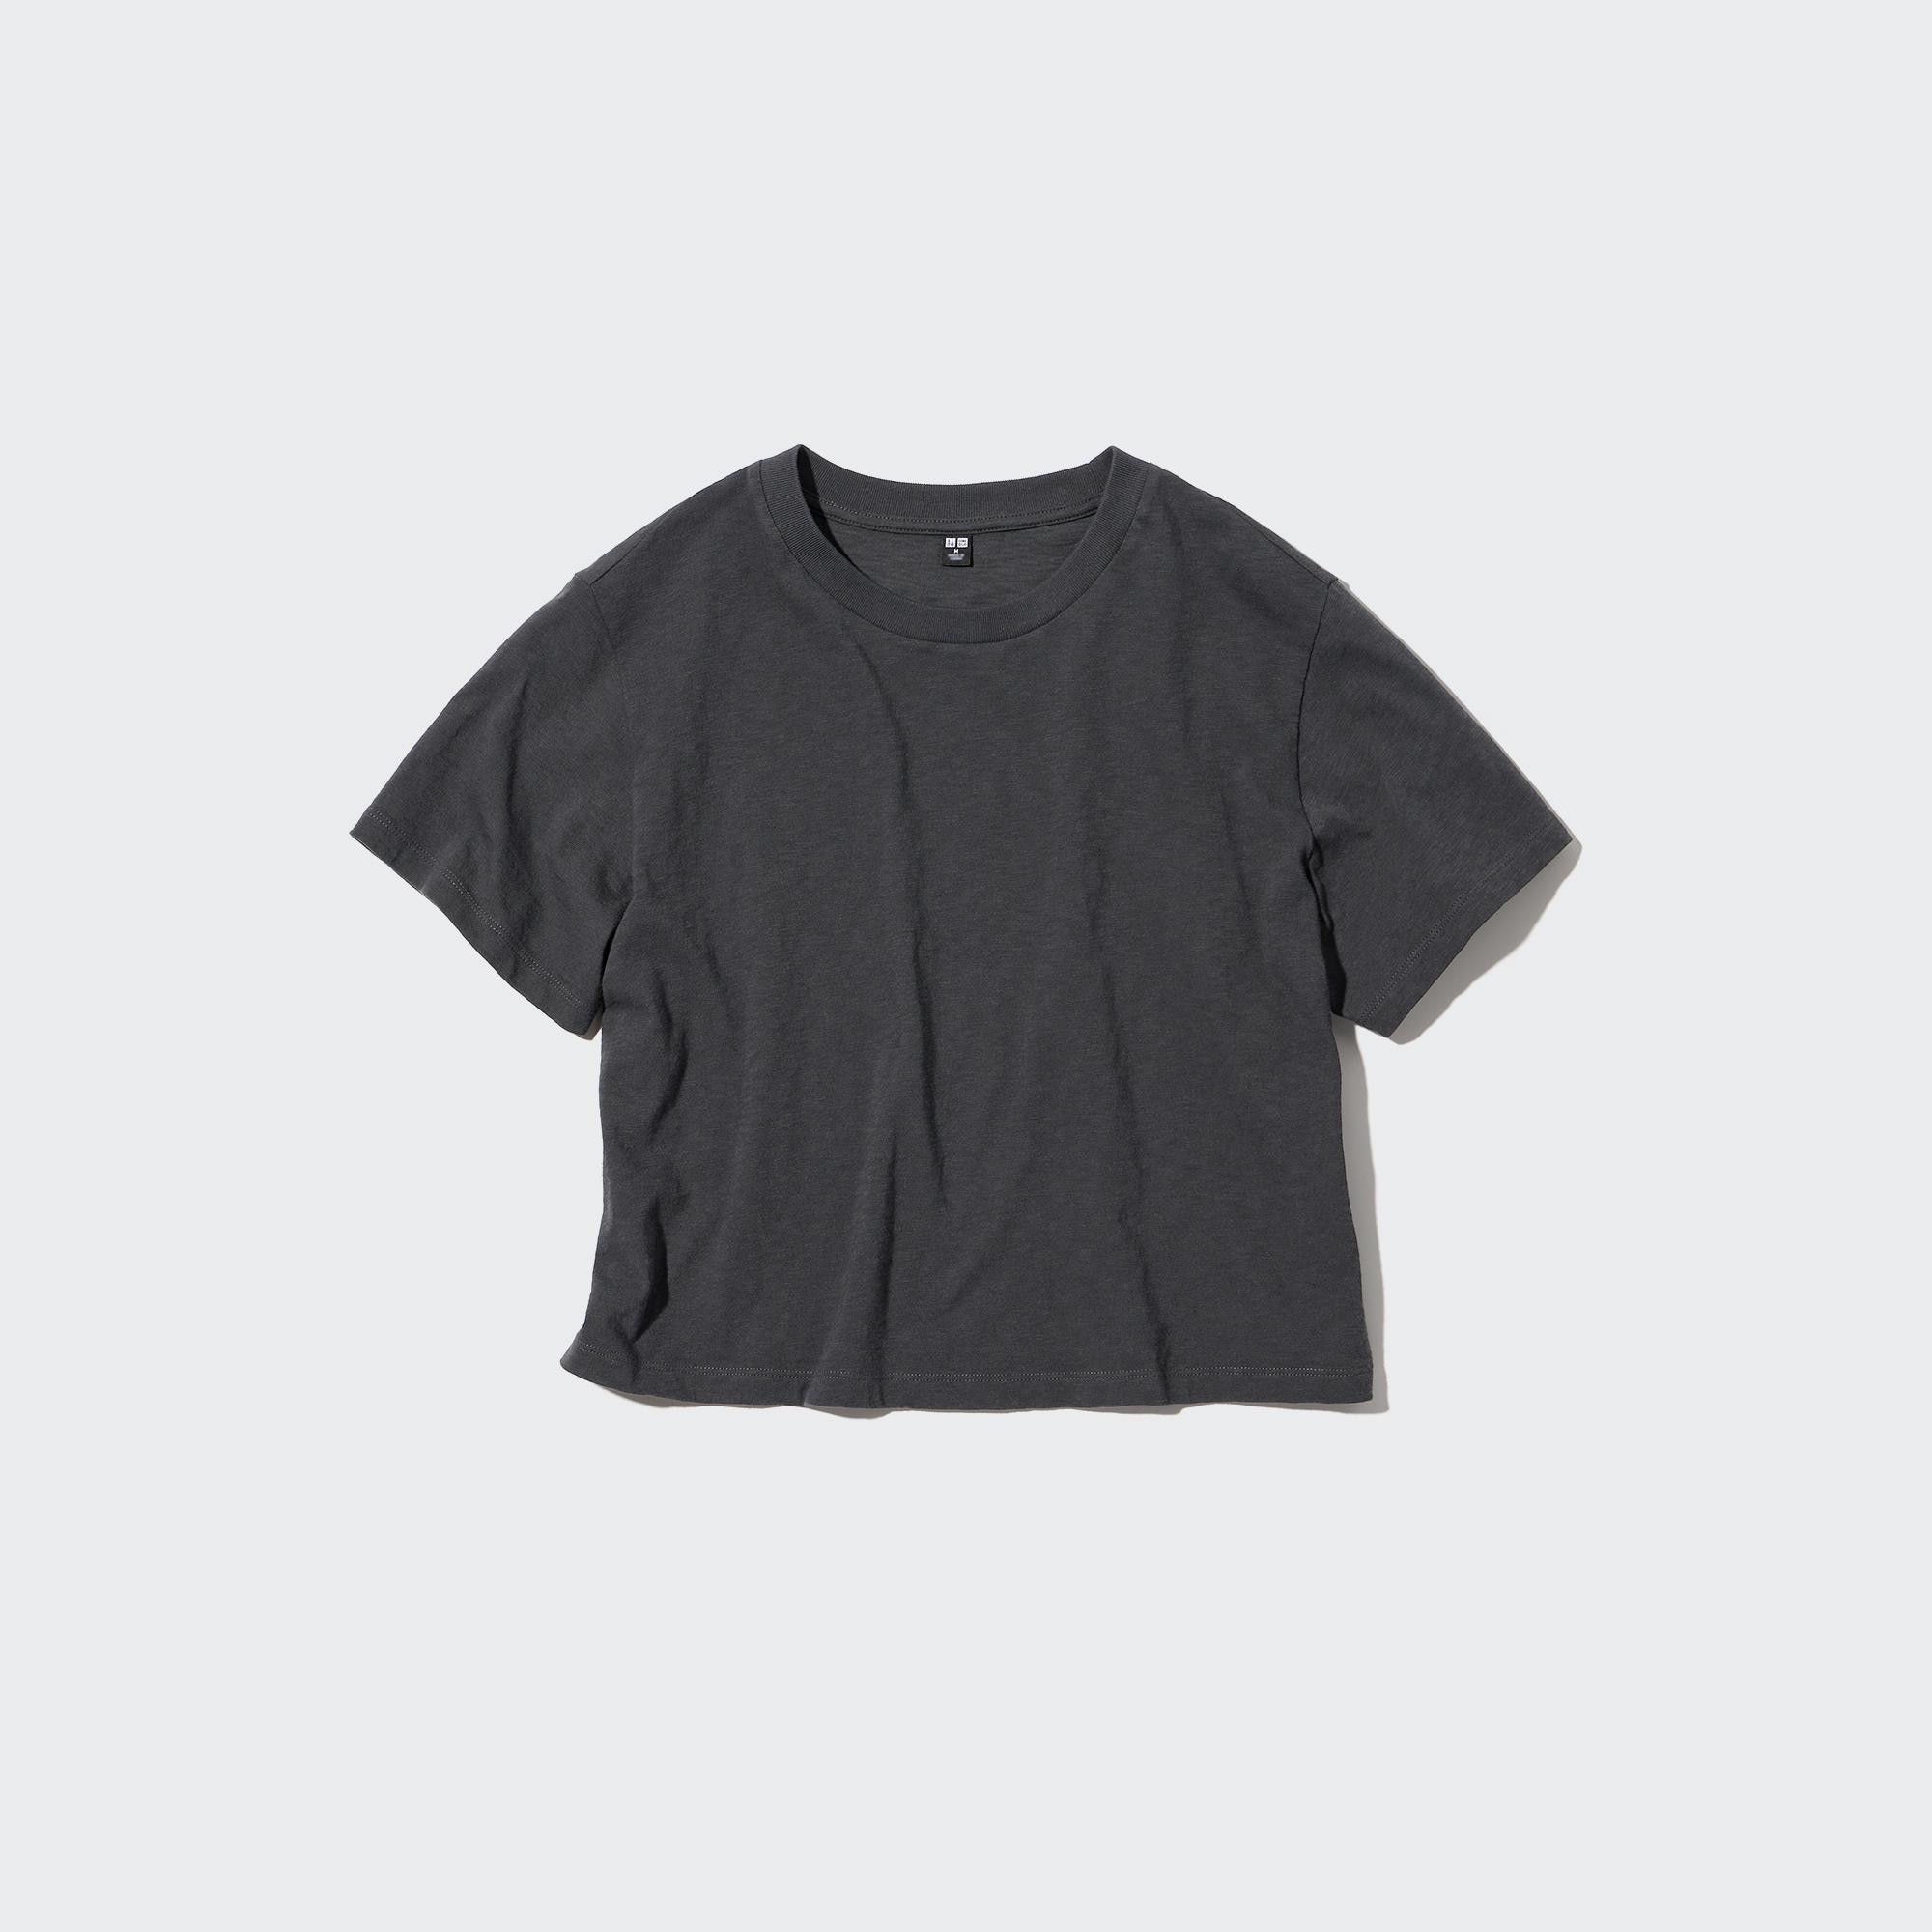 Gray S WOMEN FASHION Shirts & T-shirts Casual Tezenis T-shirt discount 88% 